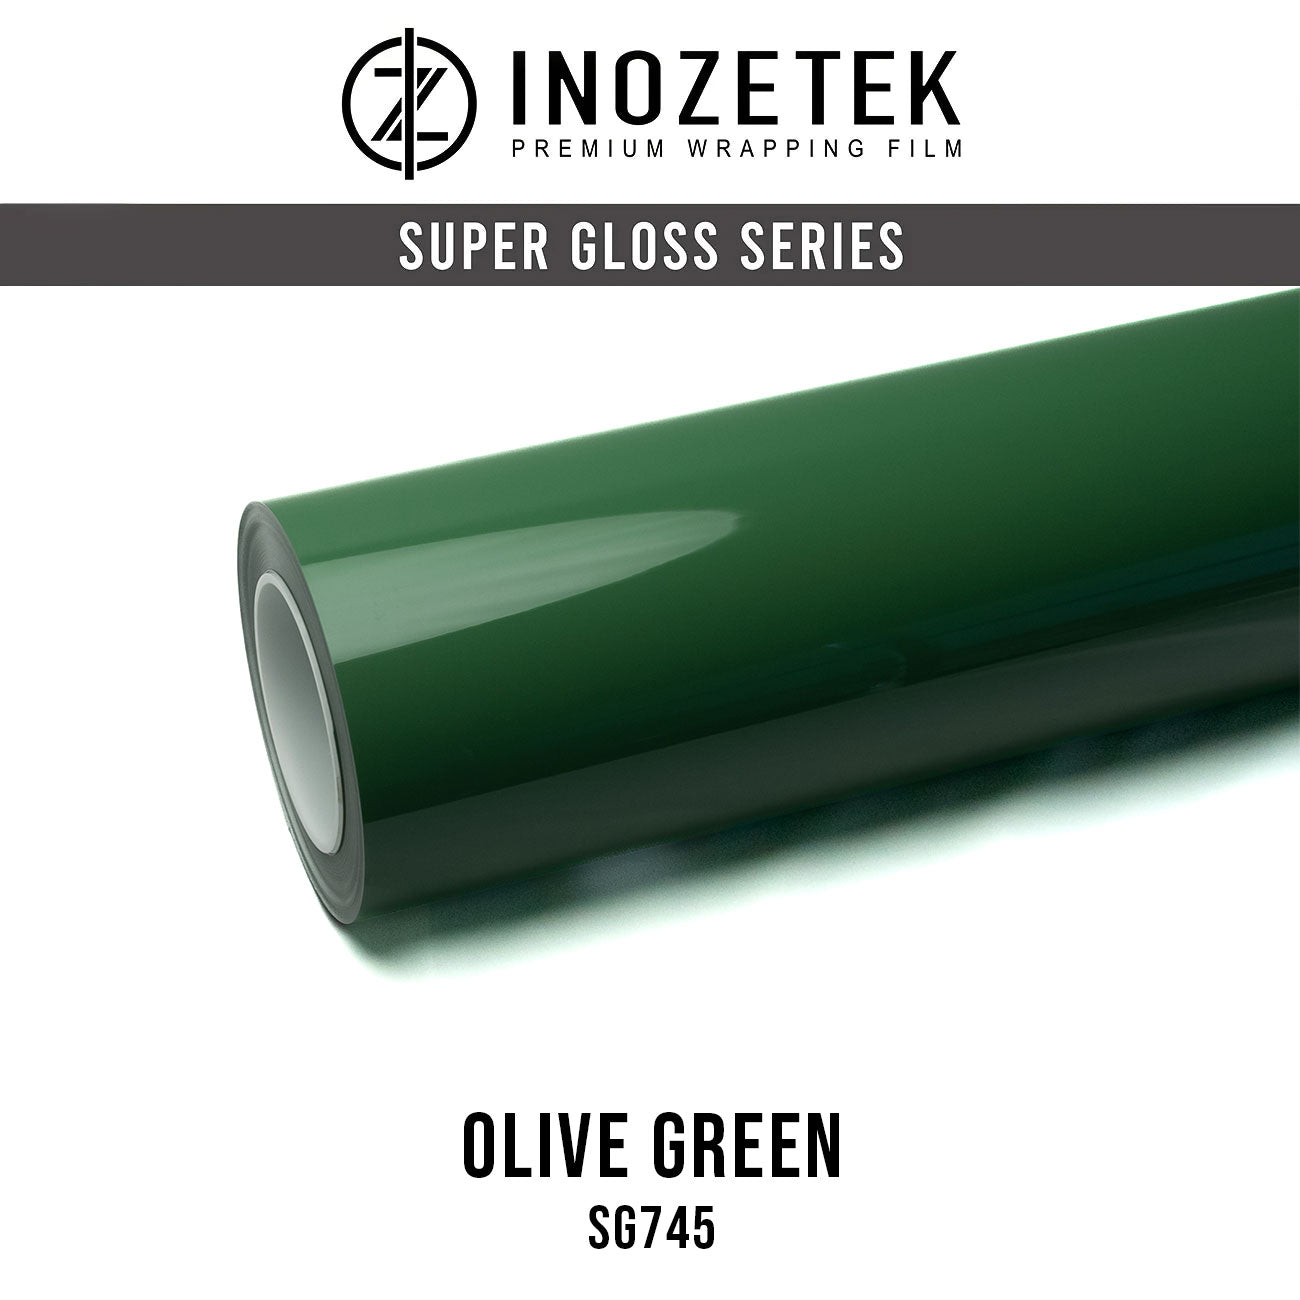 Super Gloss Olive Green - Inozetek USA